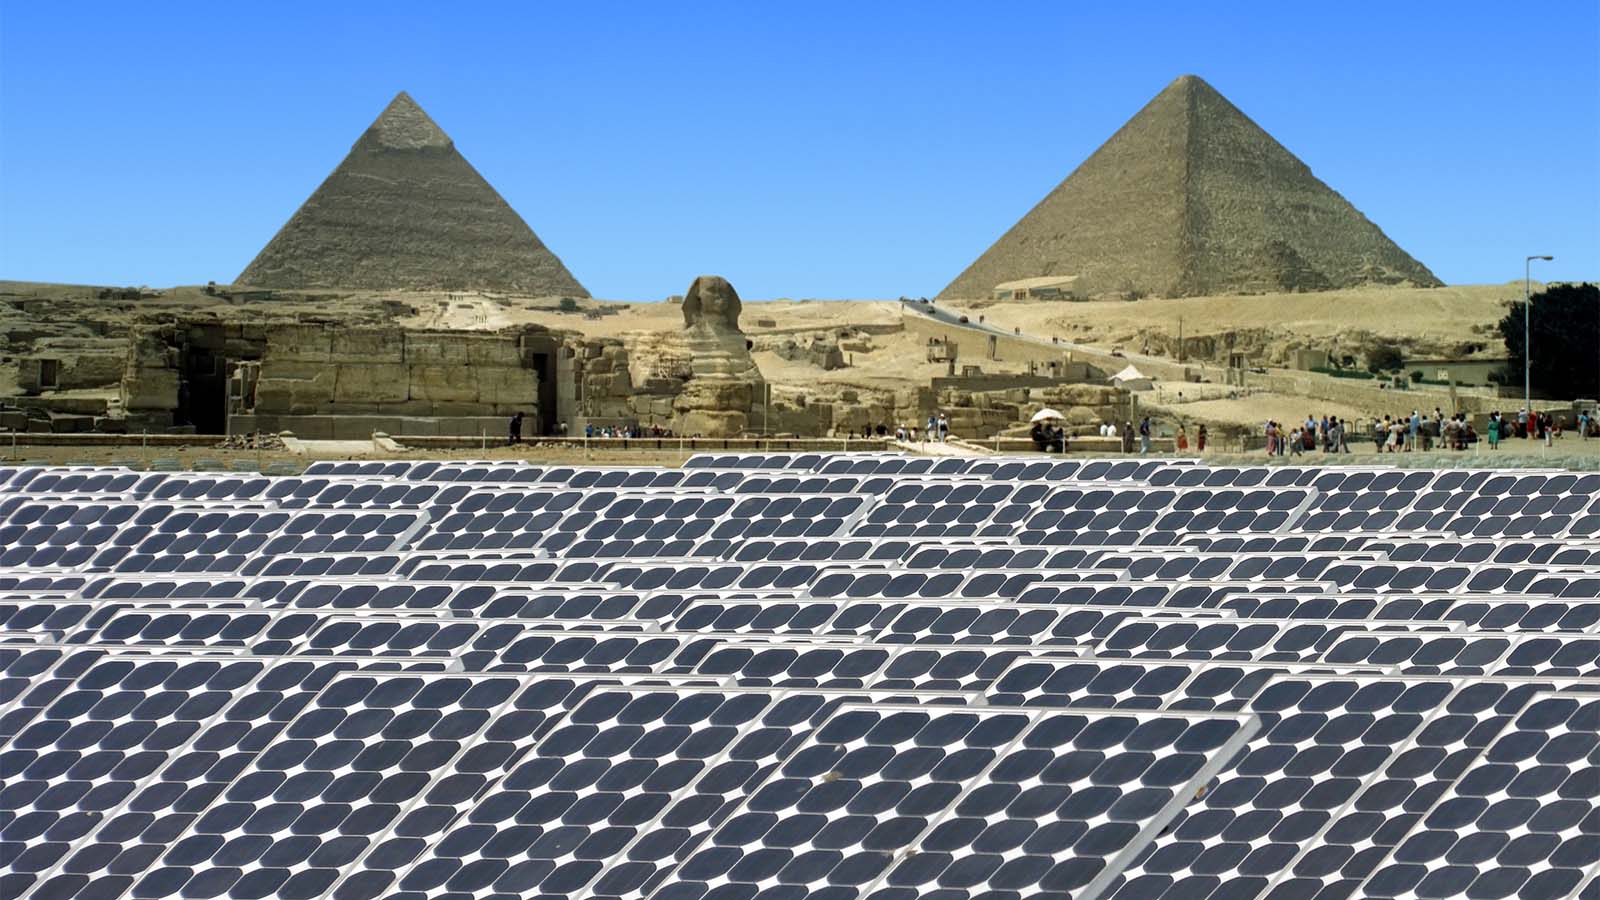 ألواح شمسية في منظر الأهرامات في الجيزة، مصر. &quot; إن قطار استبدال الوقود الأحفوري بالطاقة المتجددة قد غادر المحطة بالفعل، لكن الأمر ليس بهذه البساطة&quot; (تصوير: Shutterstock)